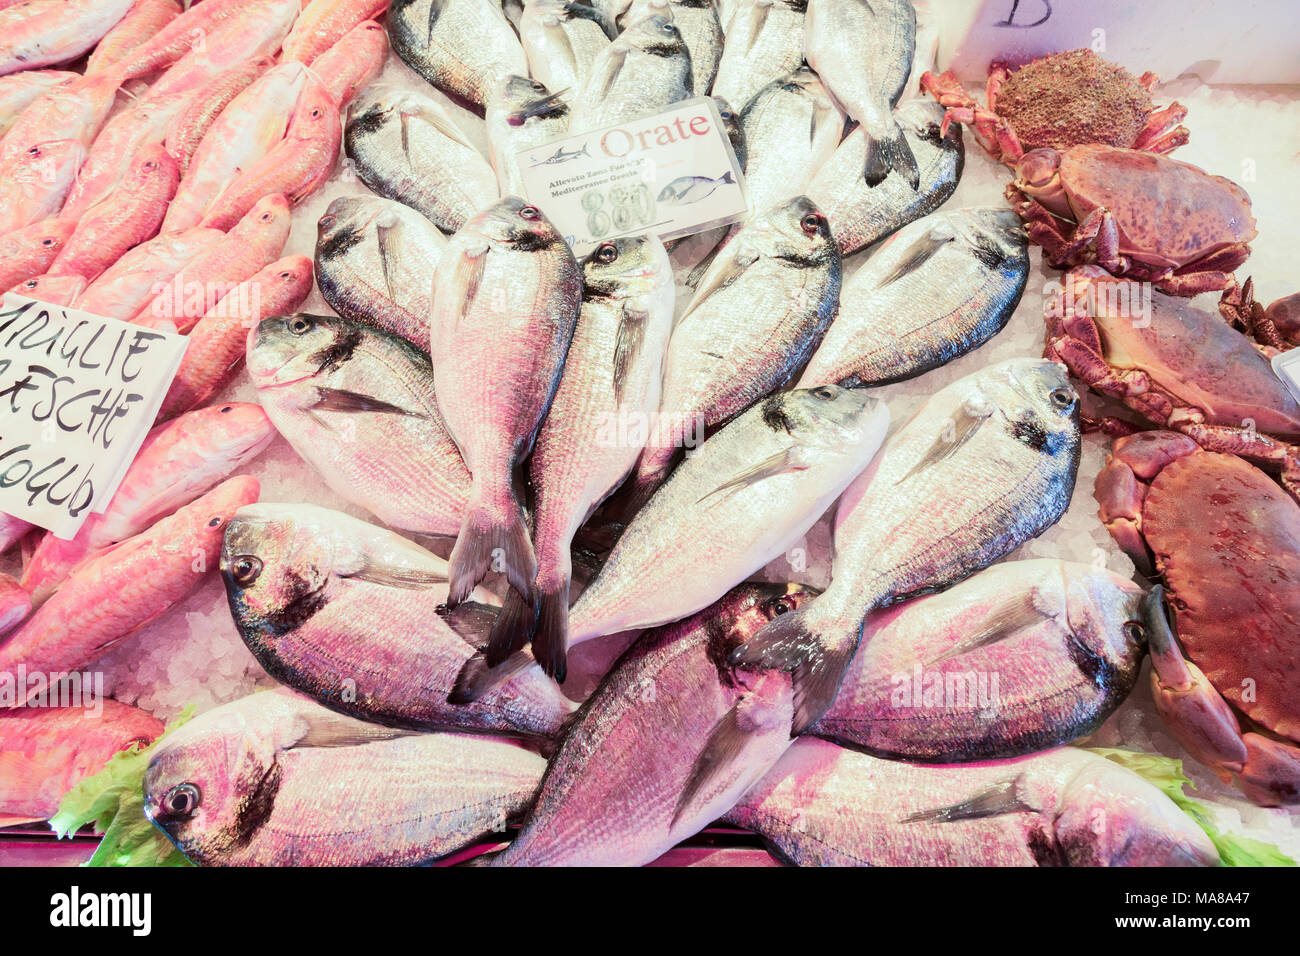 Venezianische Fischmarkt Stockfoto